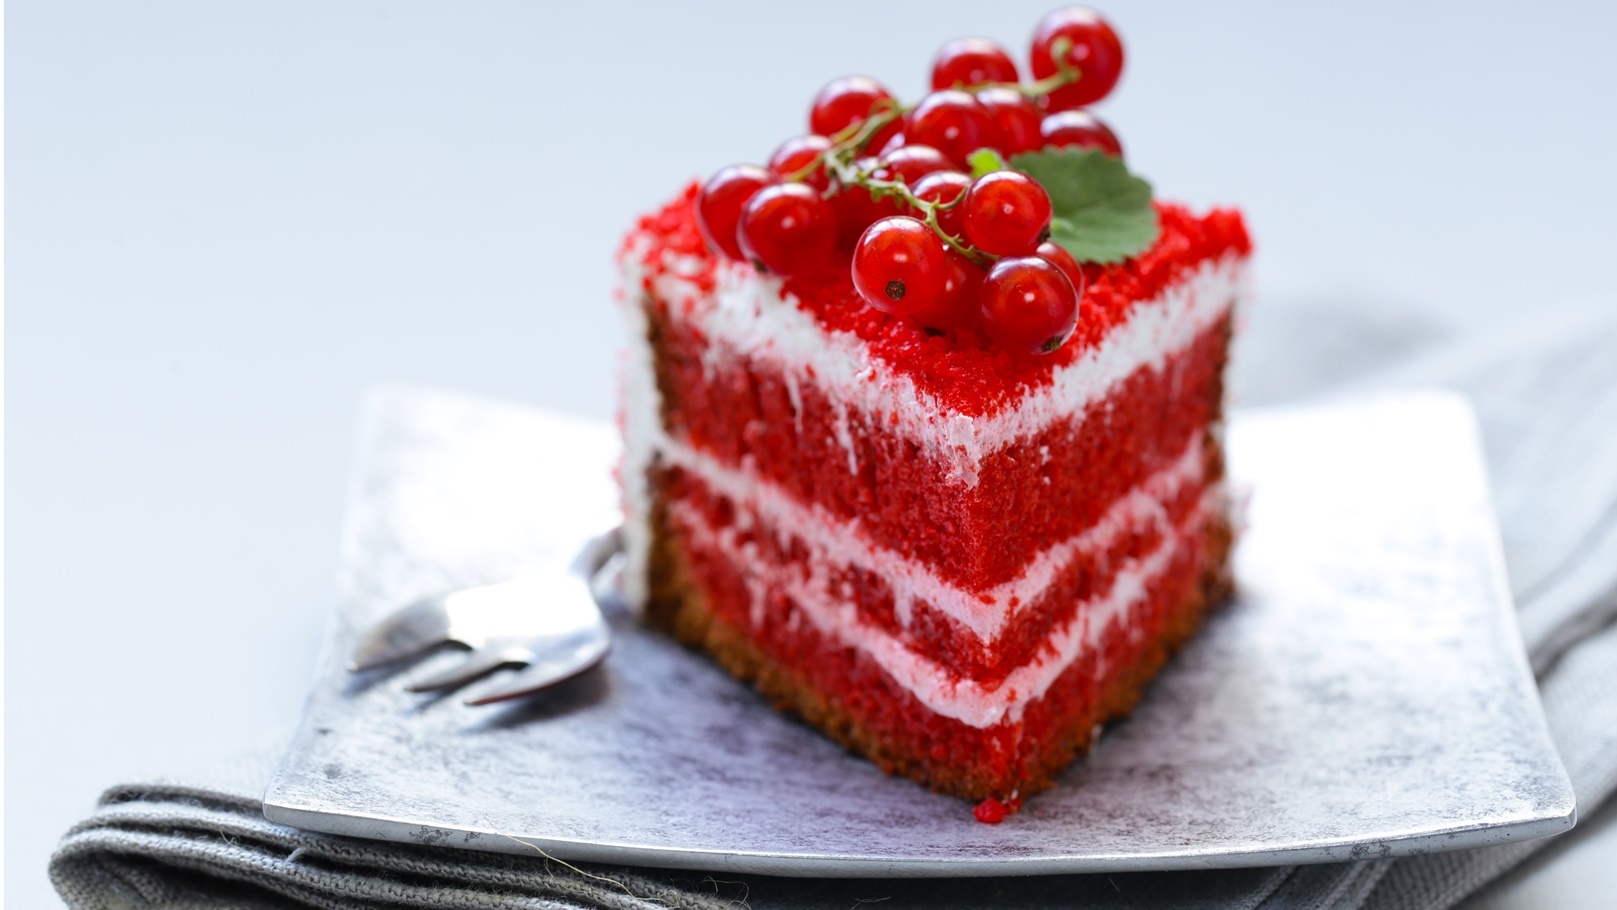 red-velvet-cake-2021-08-26-16-54-50-utc